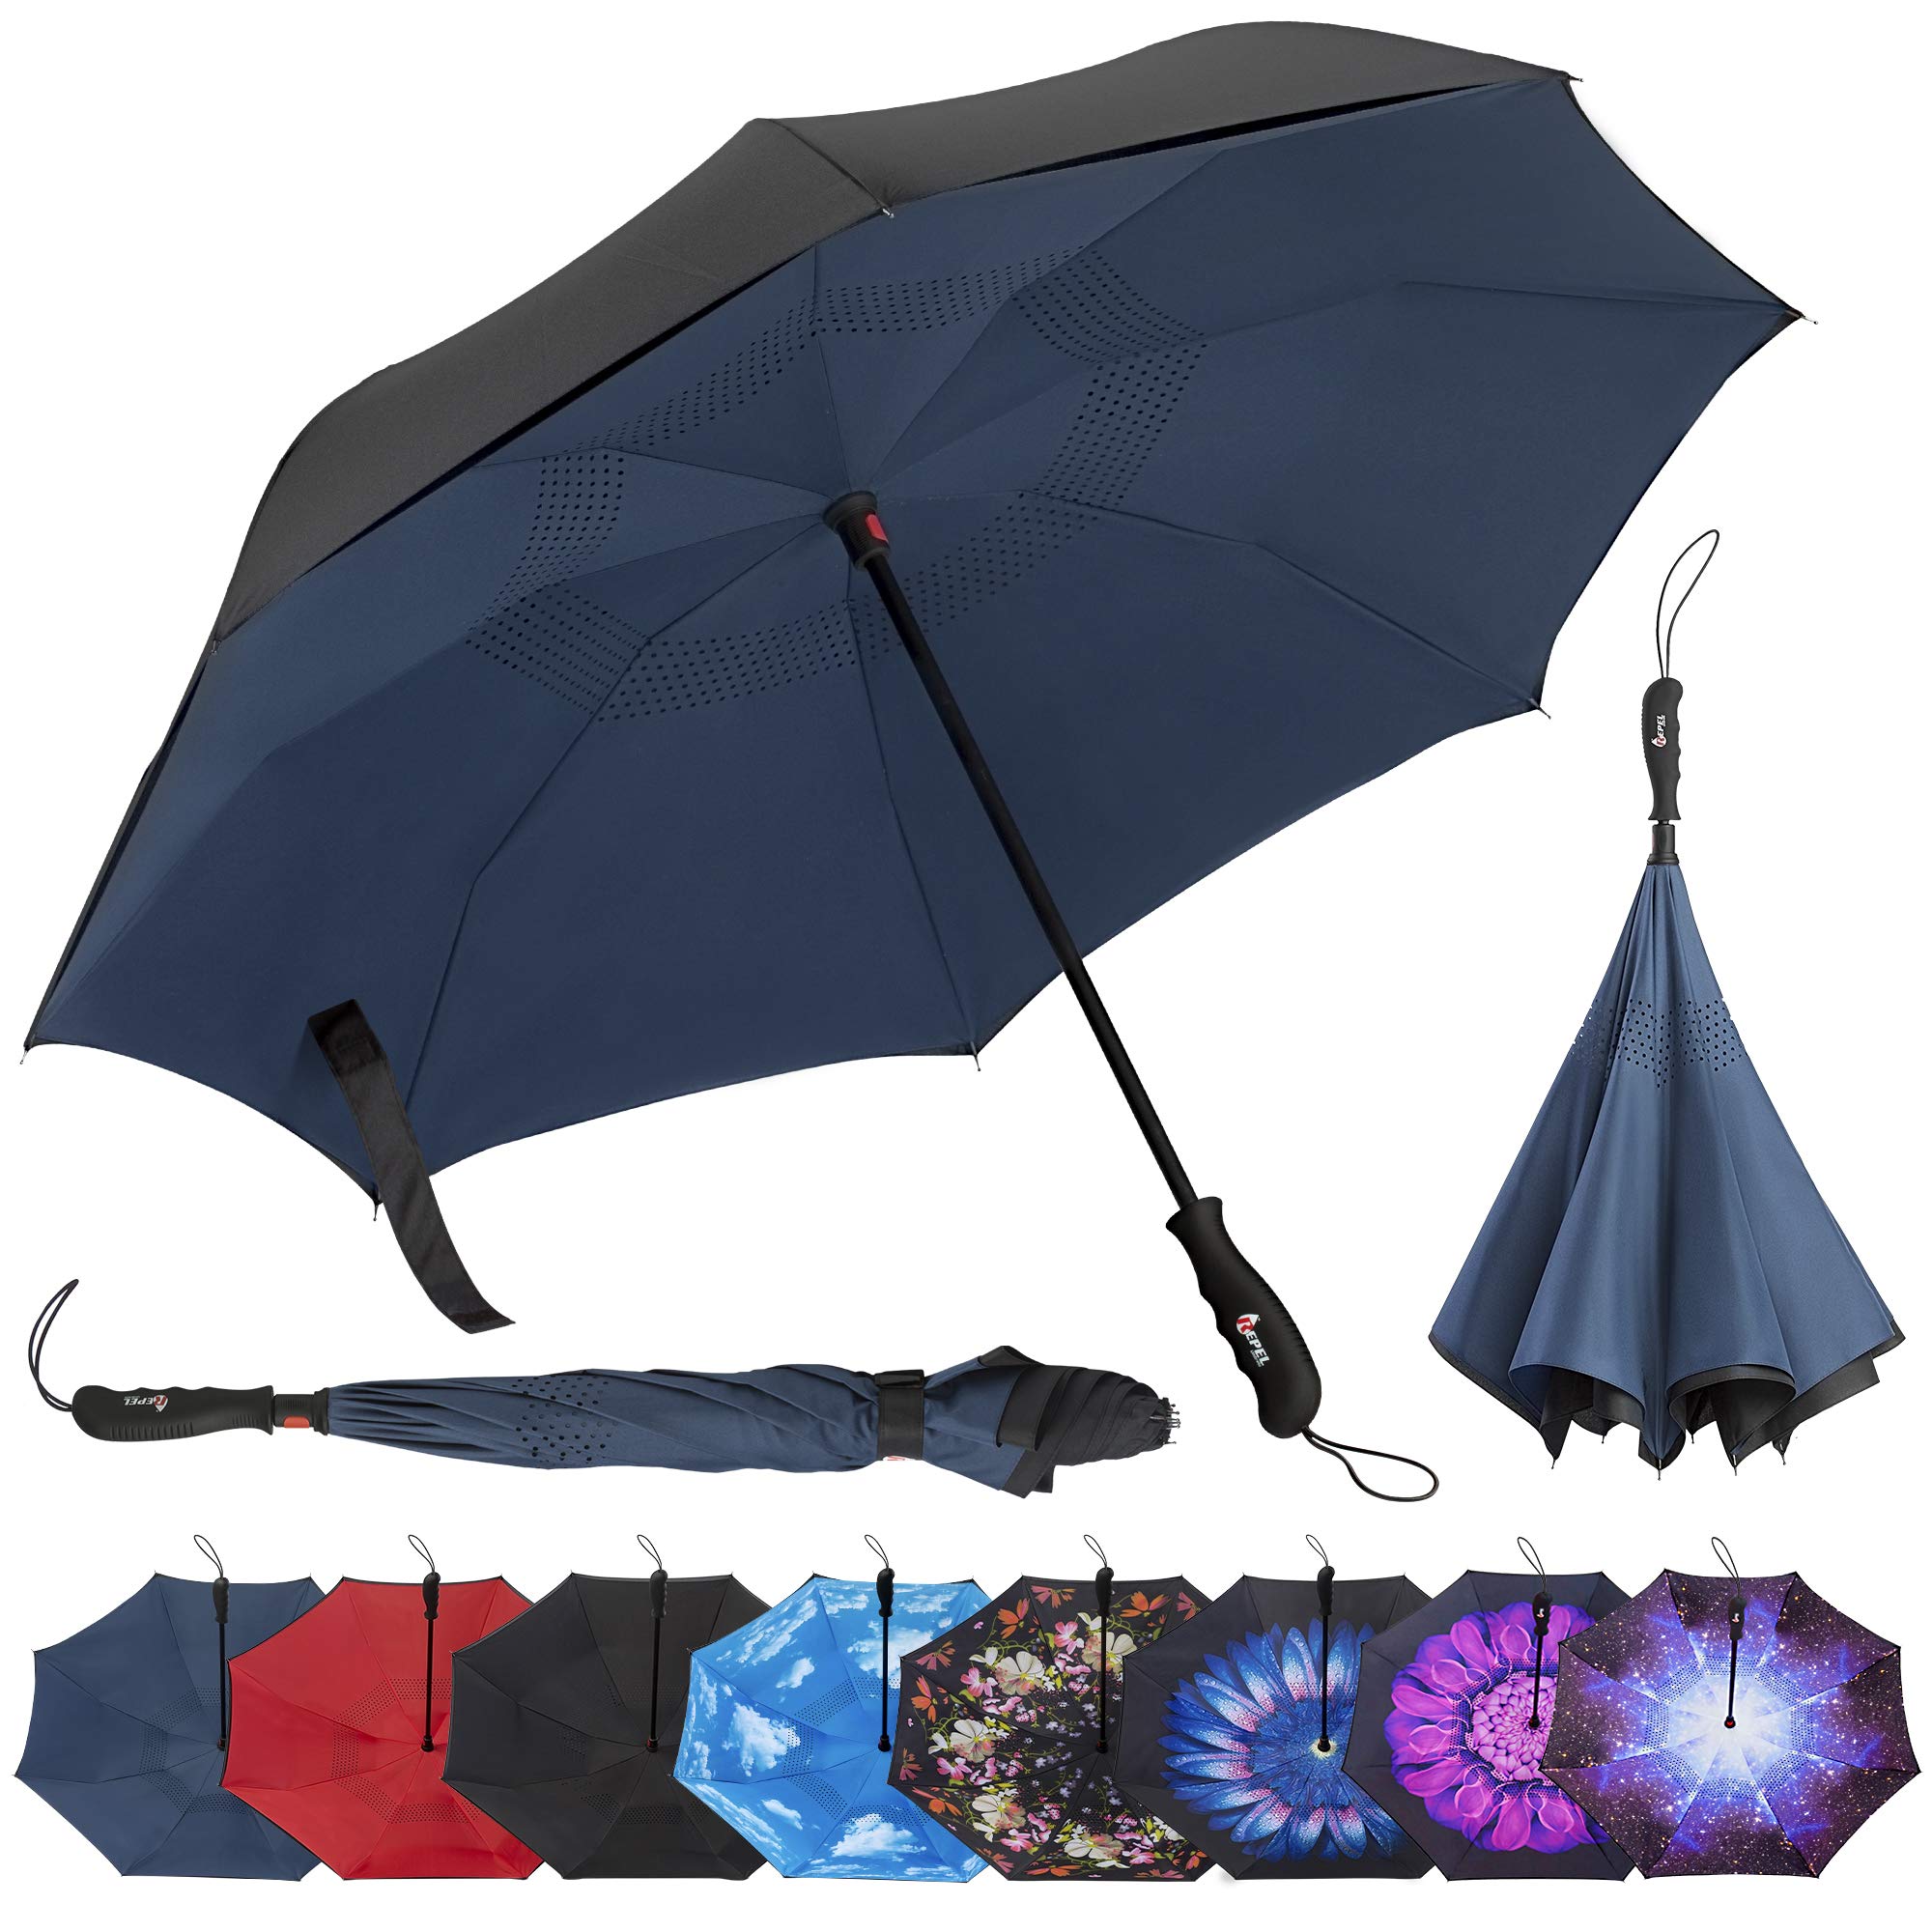 Repel Umbrella Inverted Umbrella, Upside Down Reverse Umbrella Review ...